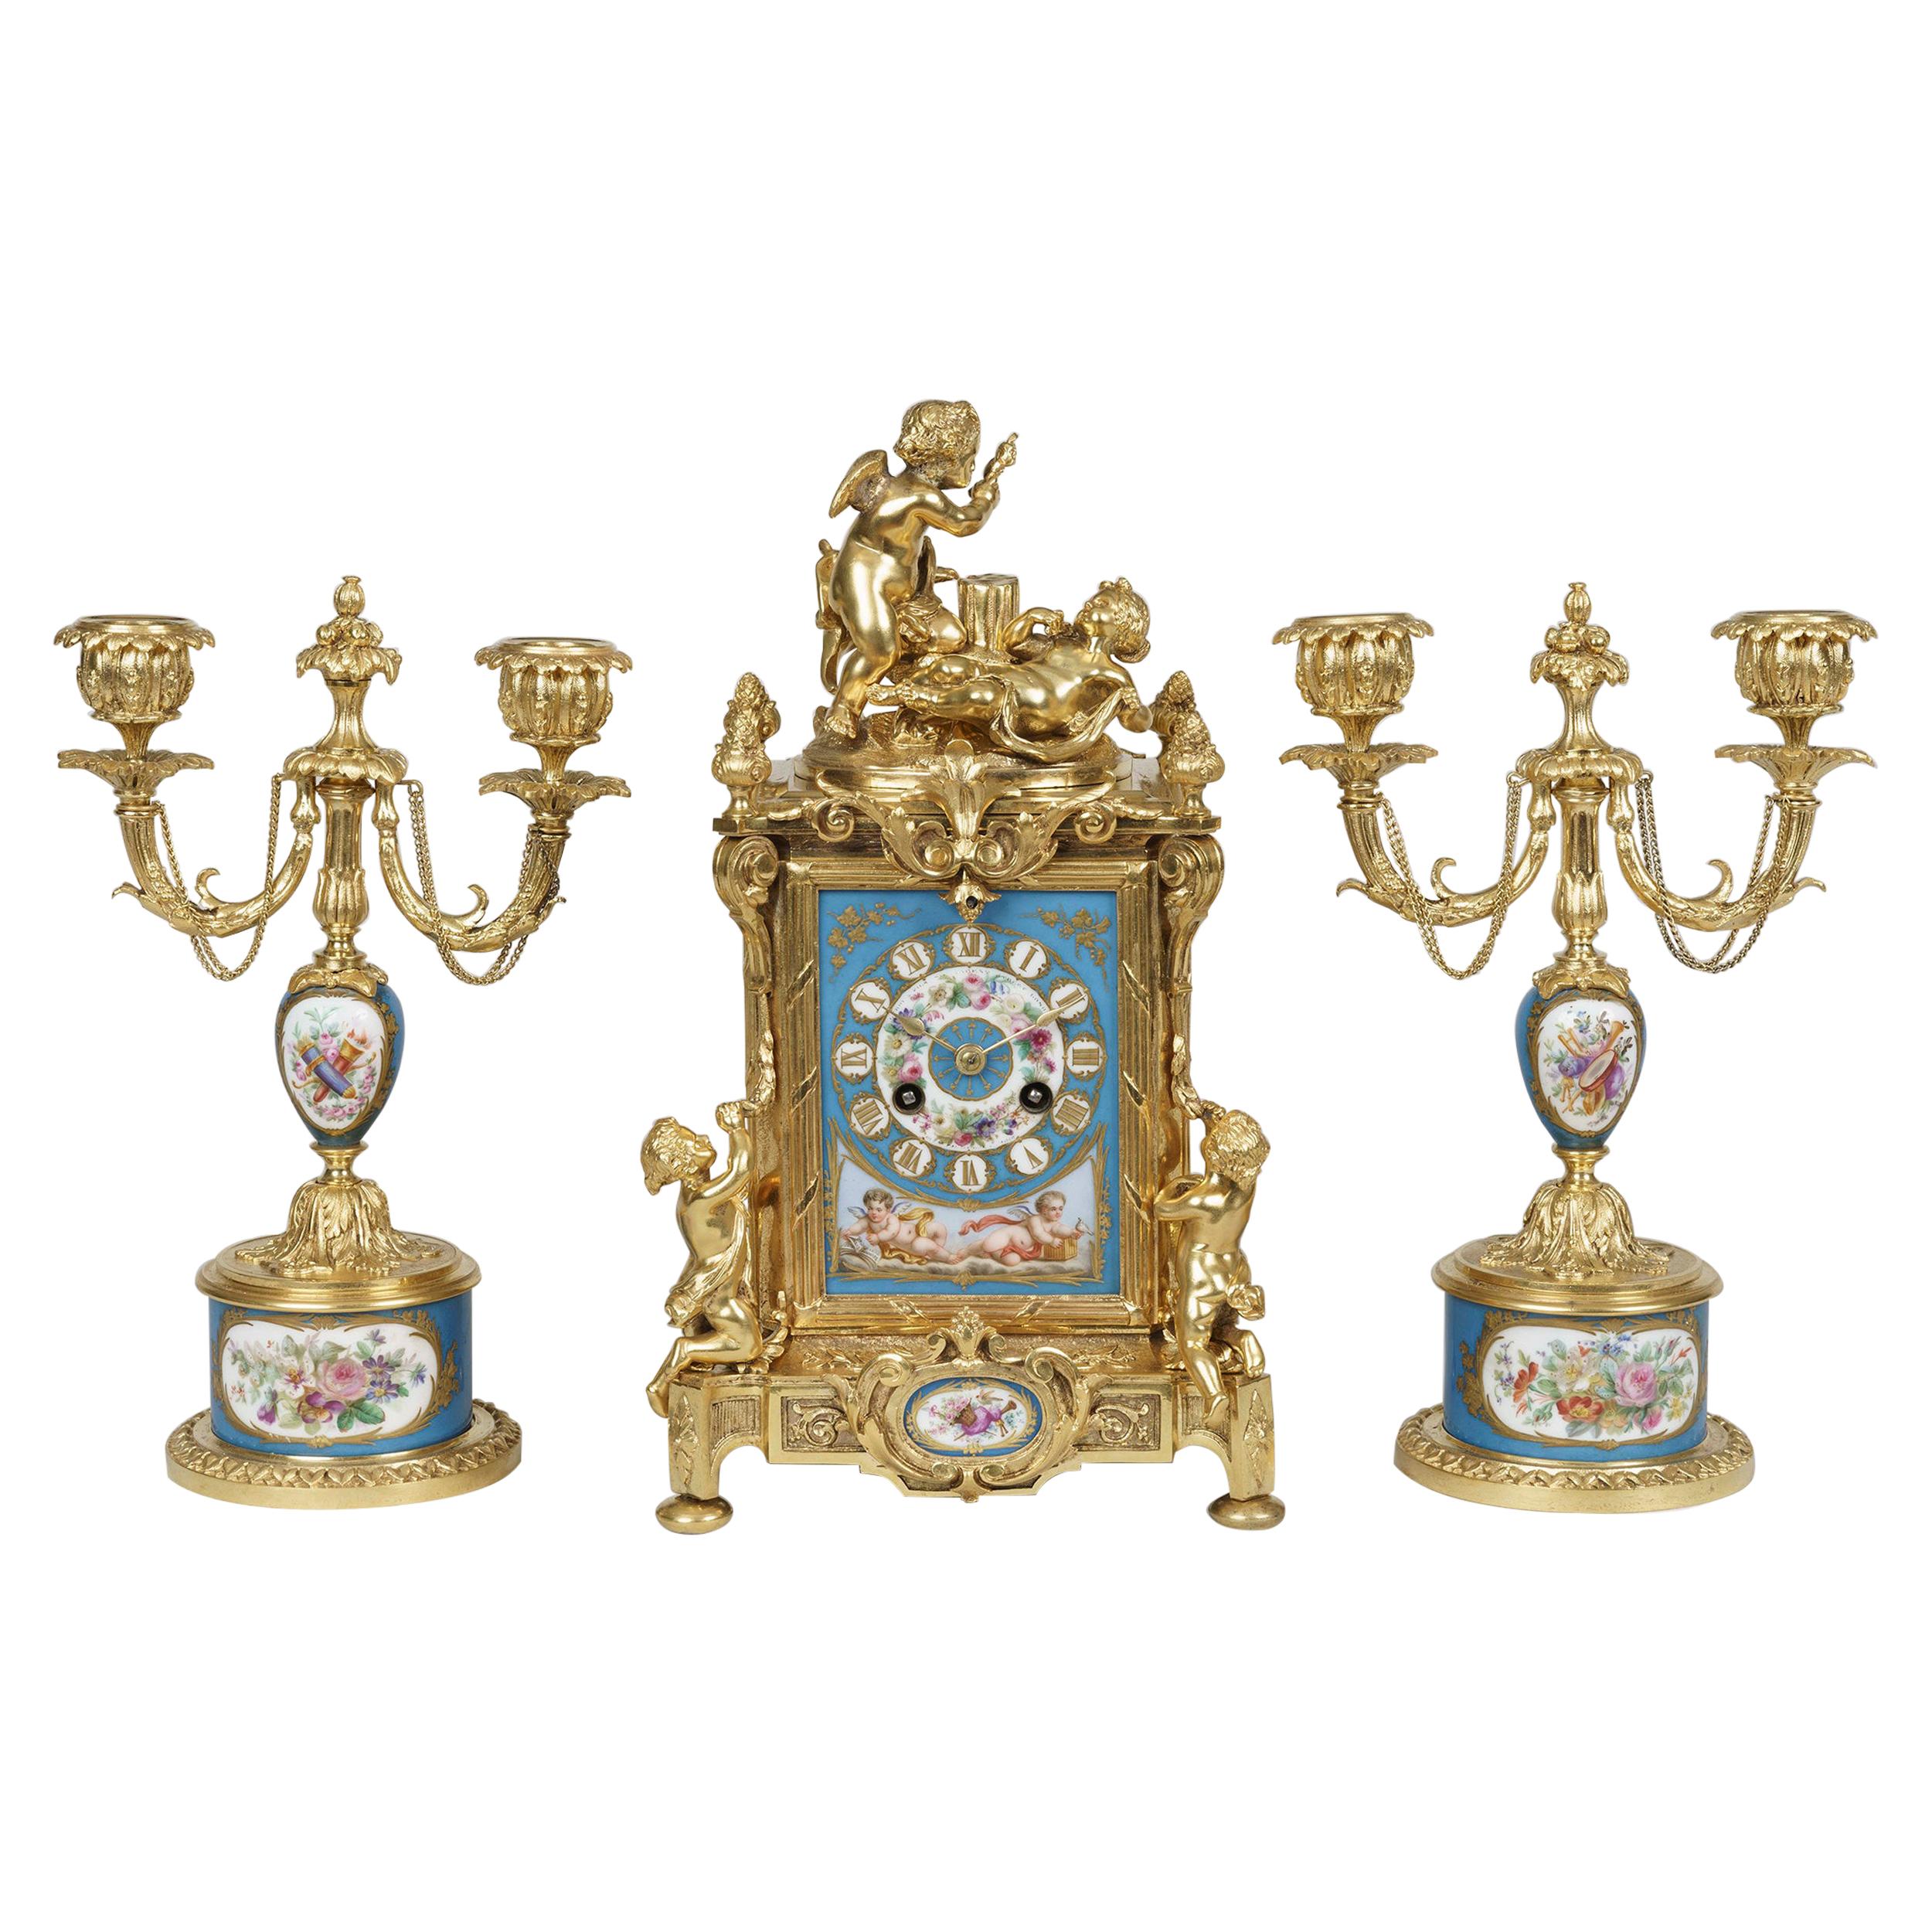 Porzellanuhr im Stil von Ormolu und Sèvres im Louis XVI-Stil